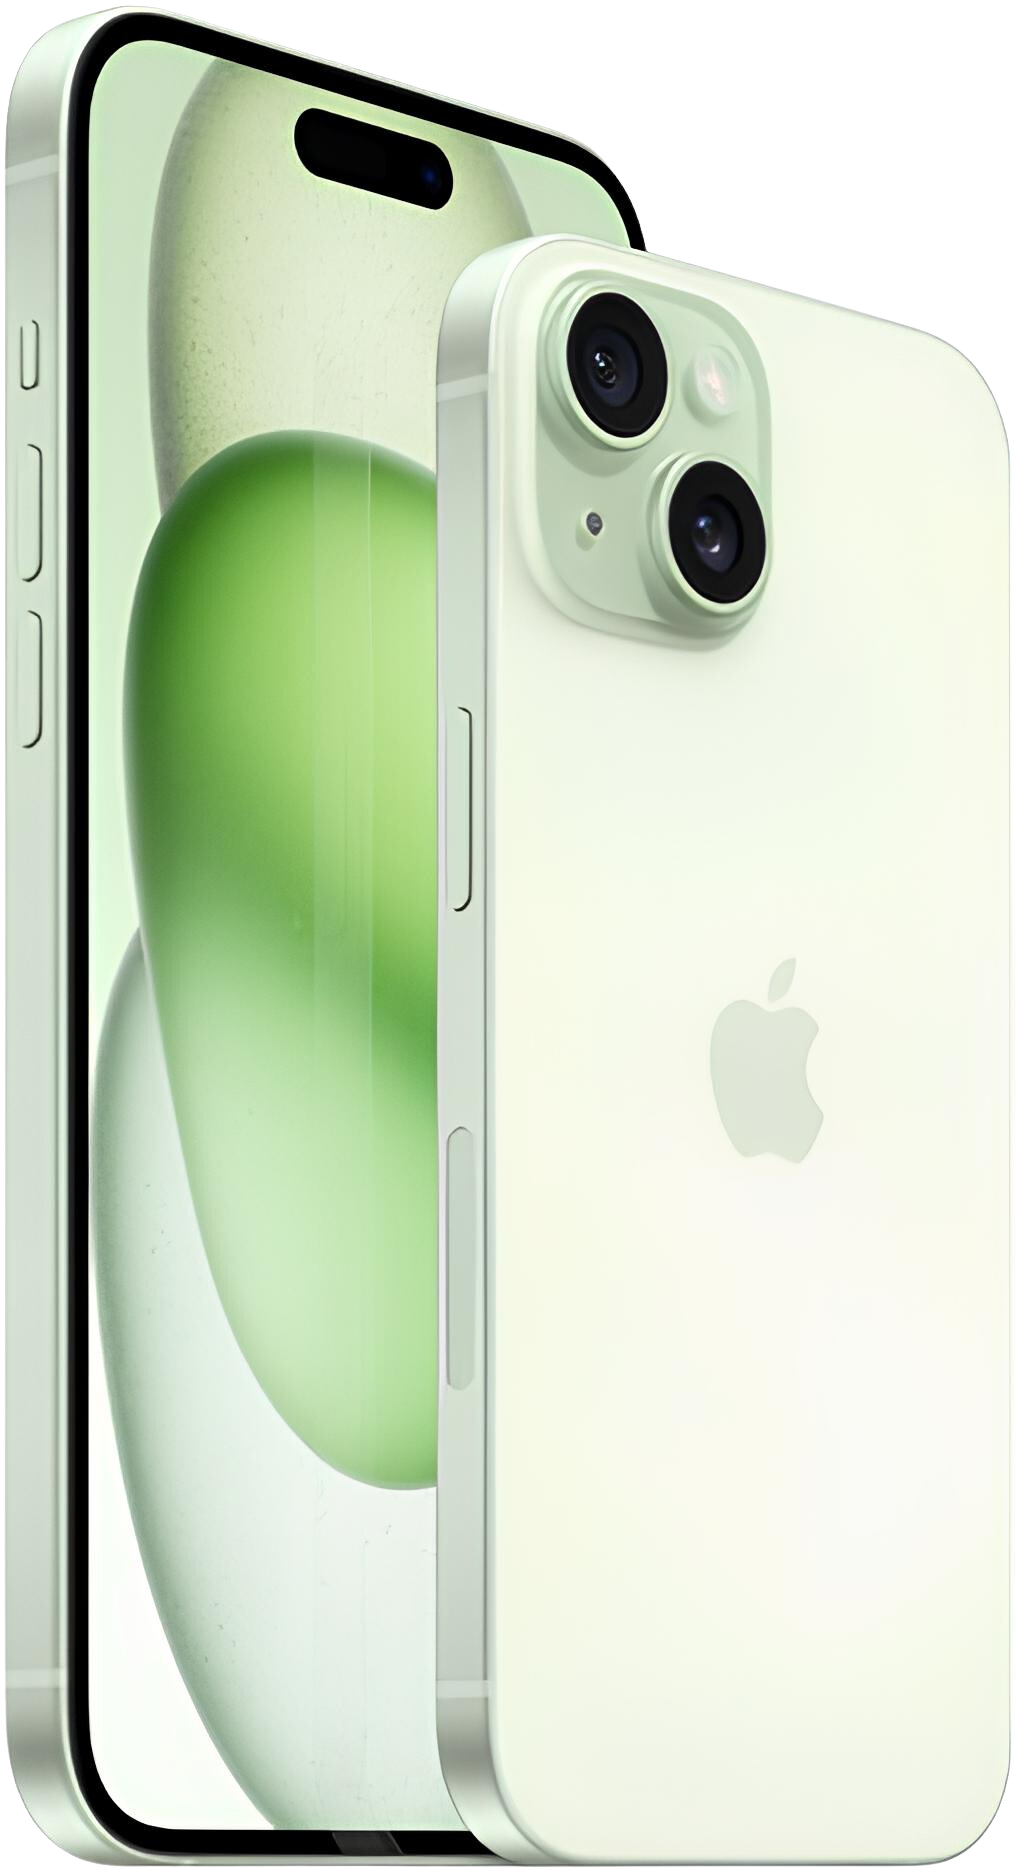 Pièces détachées, vitres tactiles, écrans LCD, accessoires pour iPhone 6 -  Chronostocks